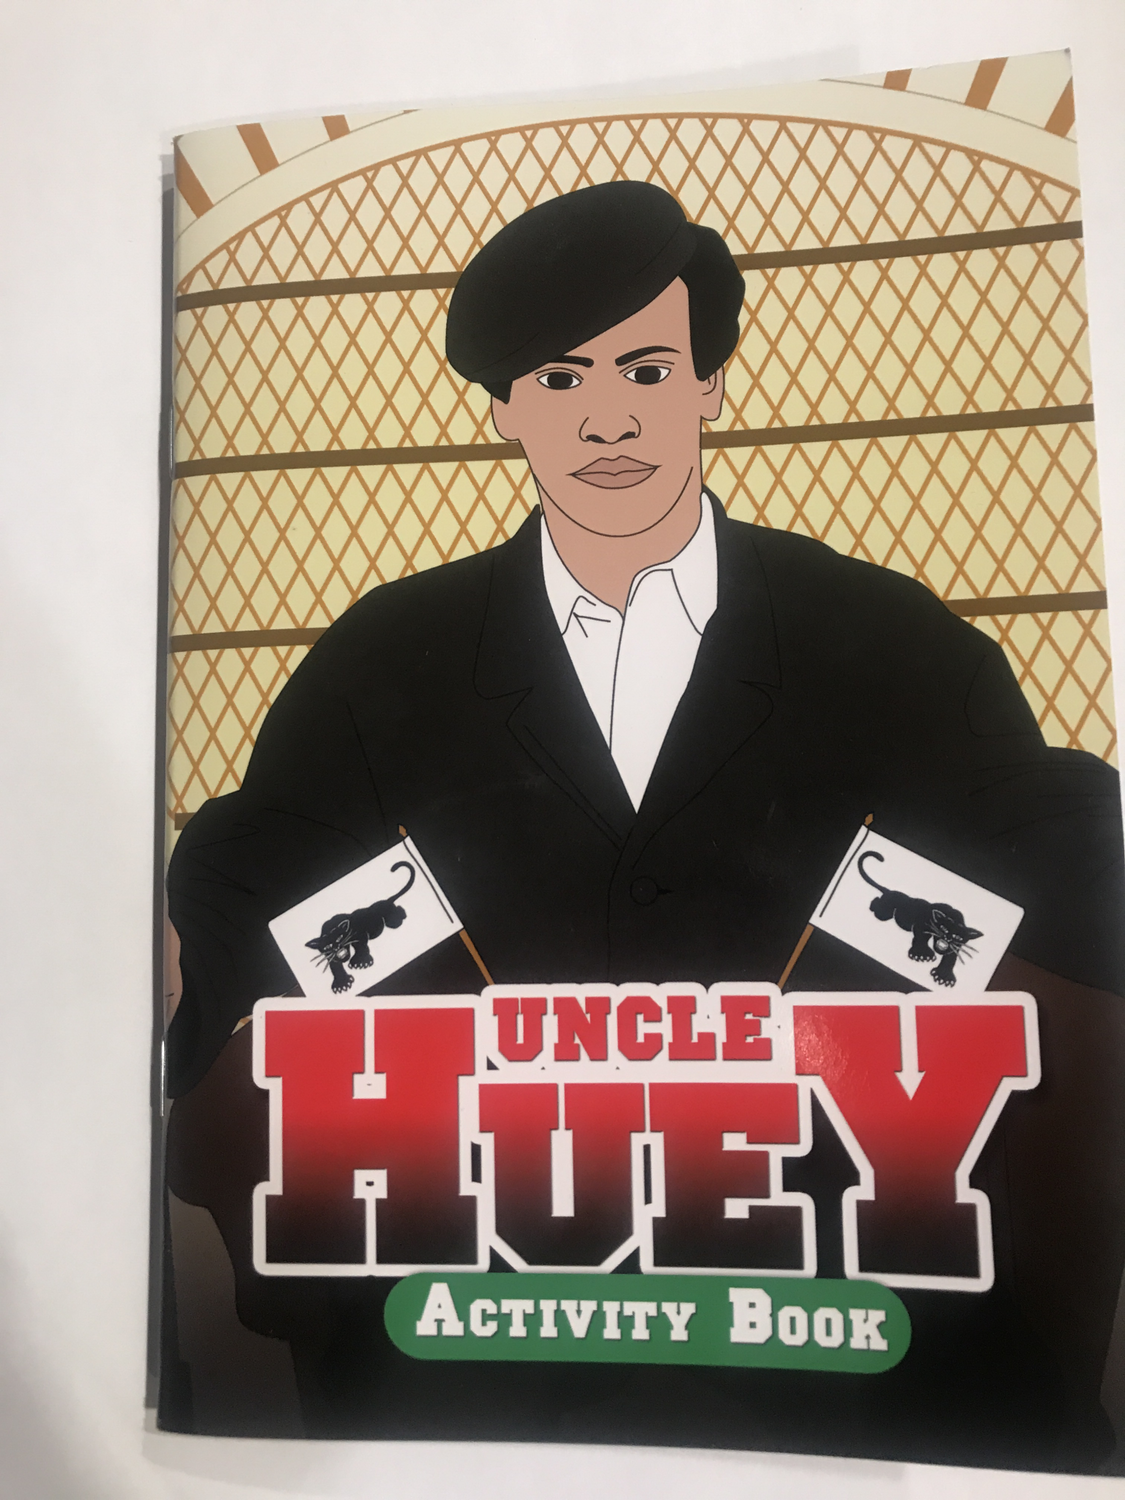 Uncle Huey Activity Book